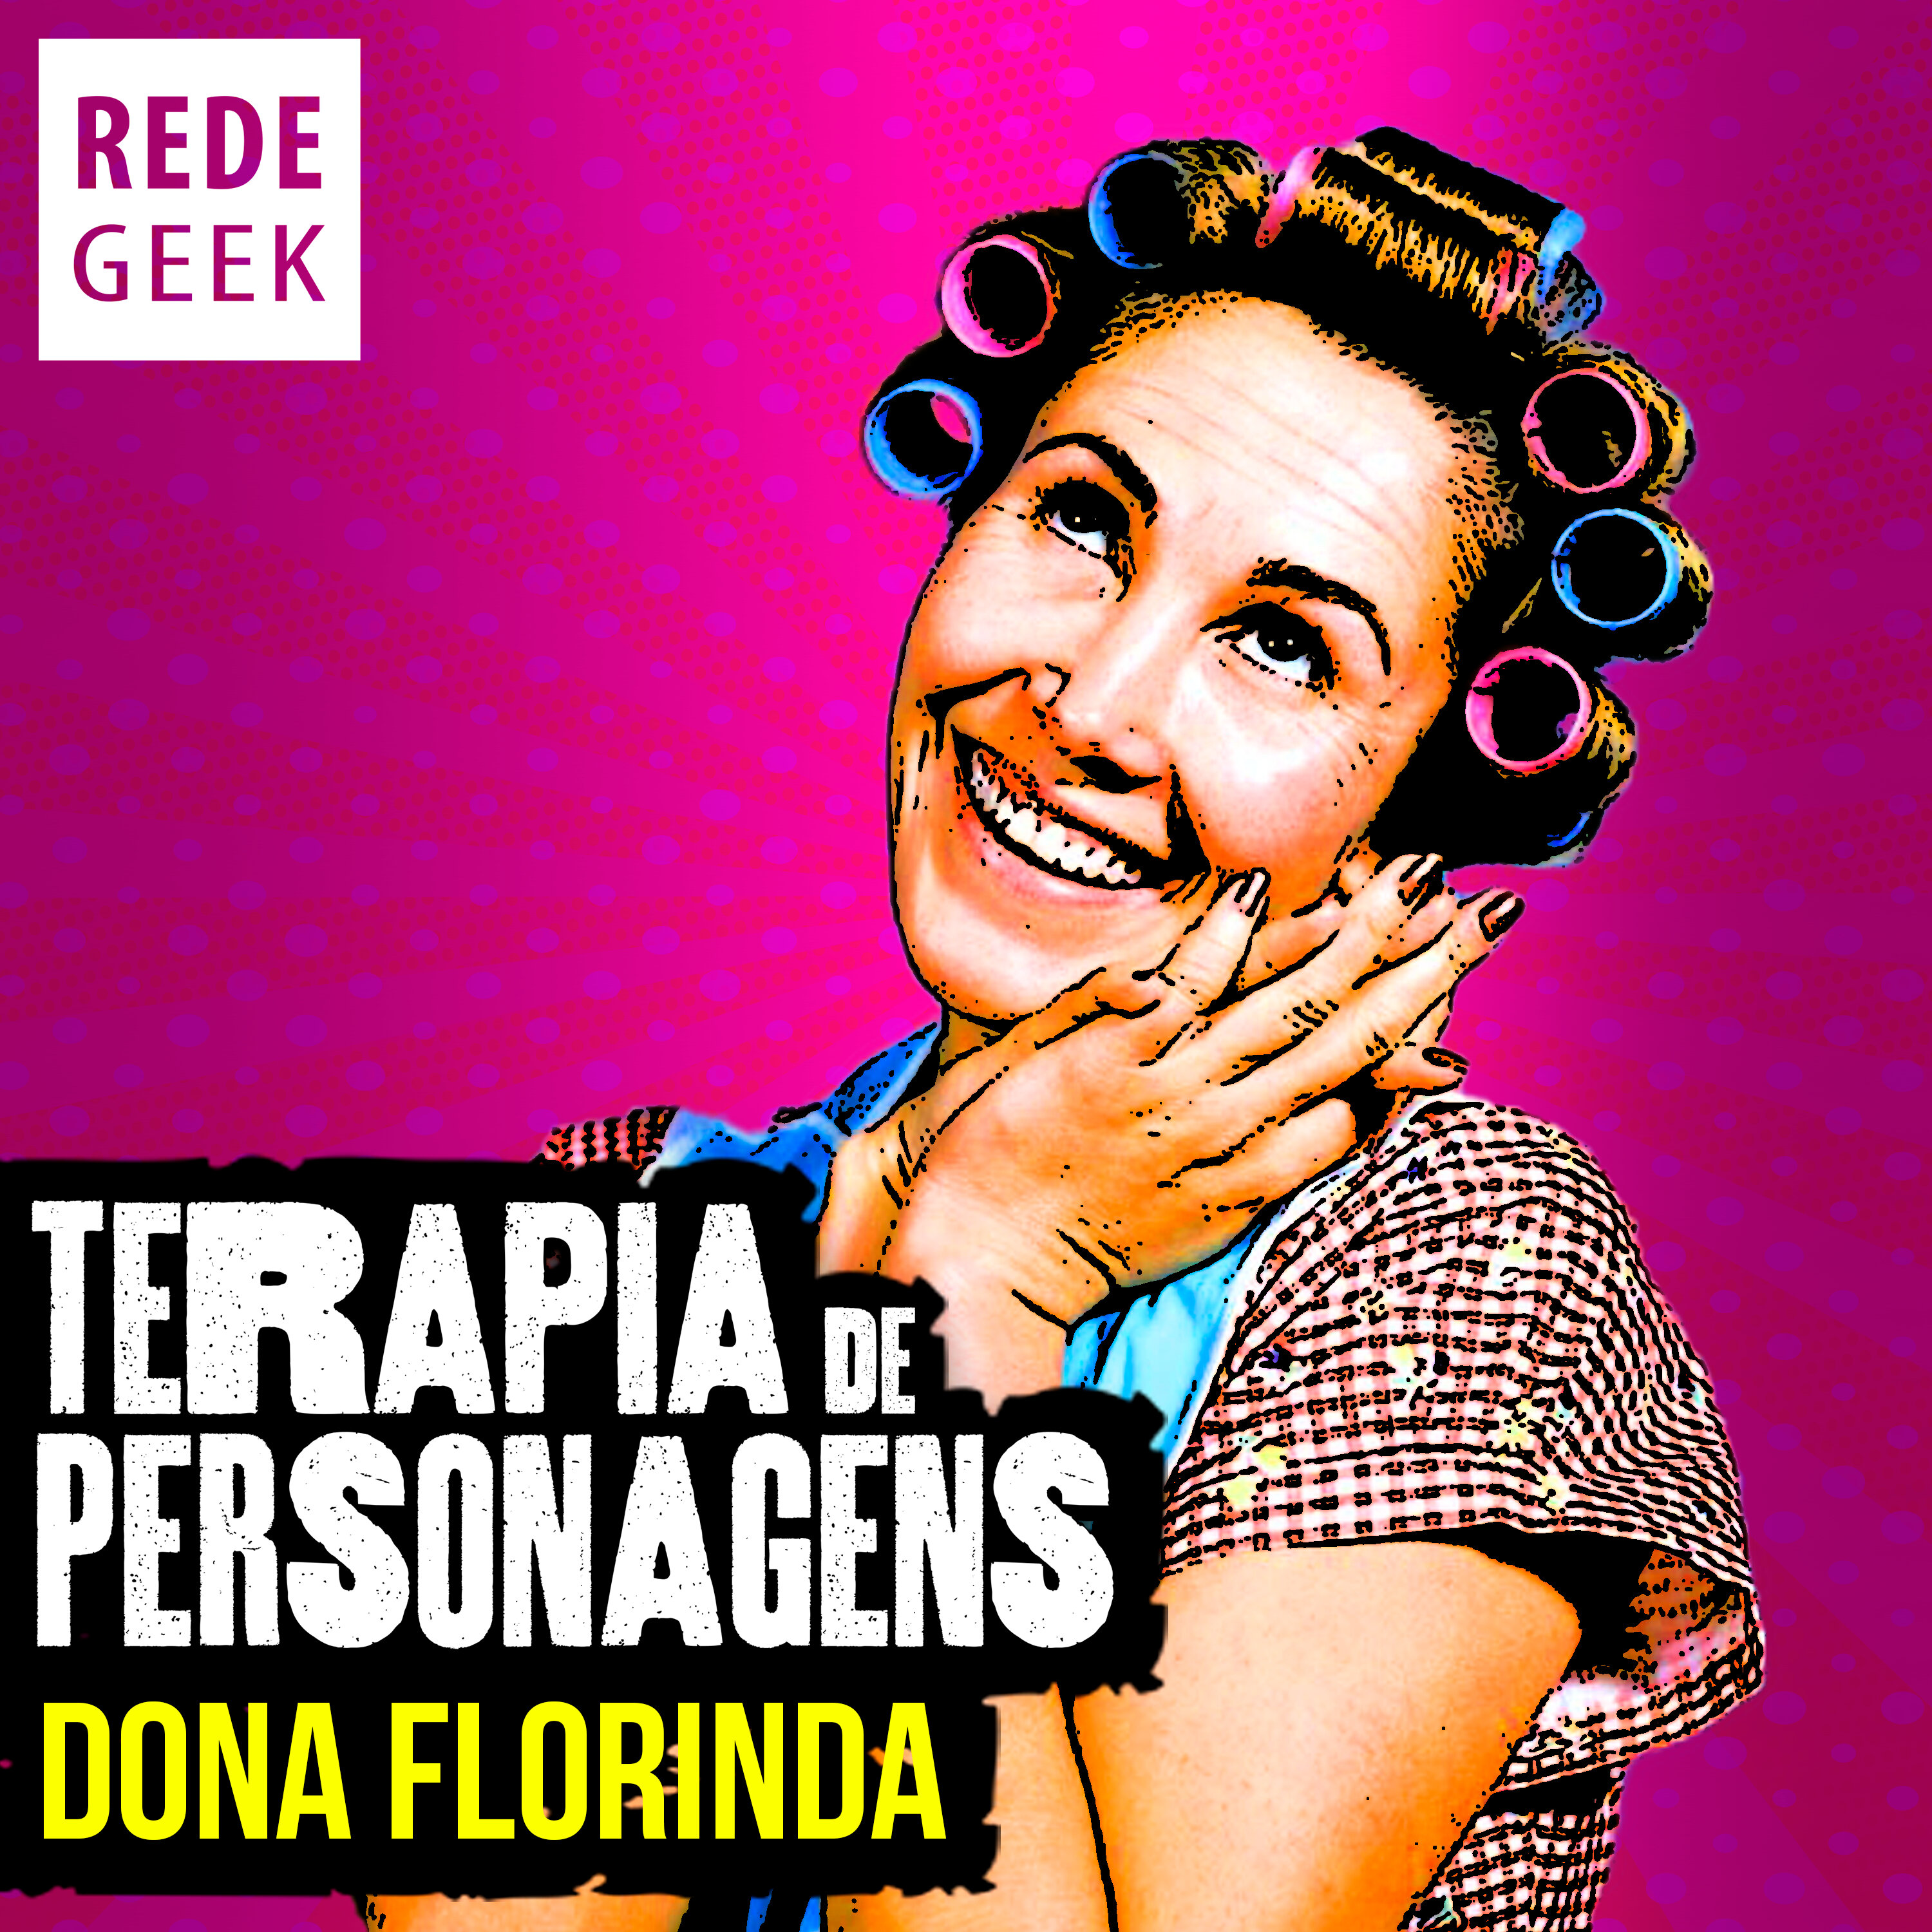 TERAPIA DE PERSONAGENS - Dona Florinda